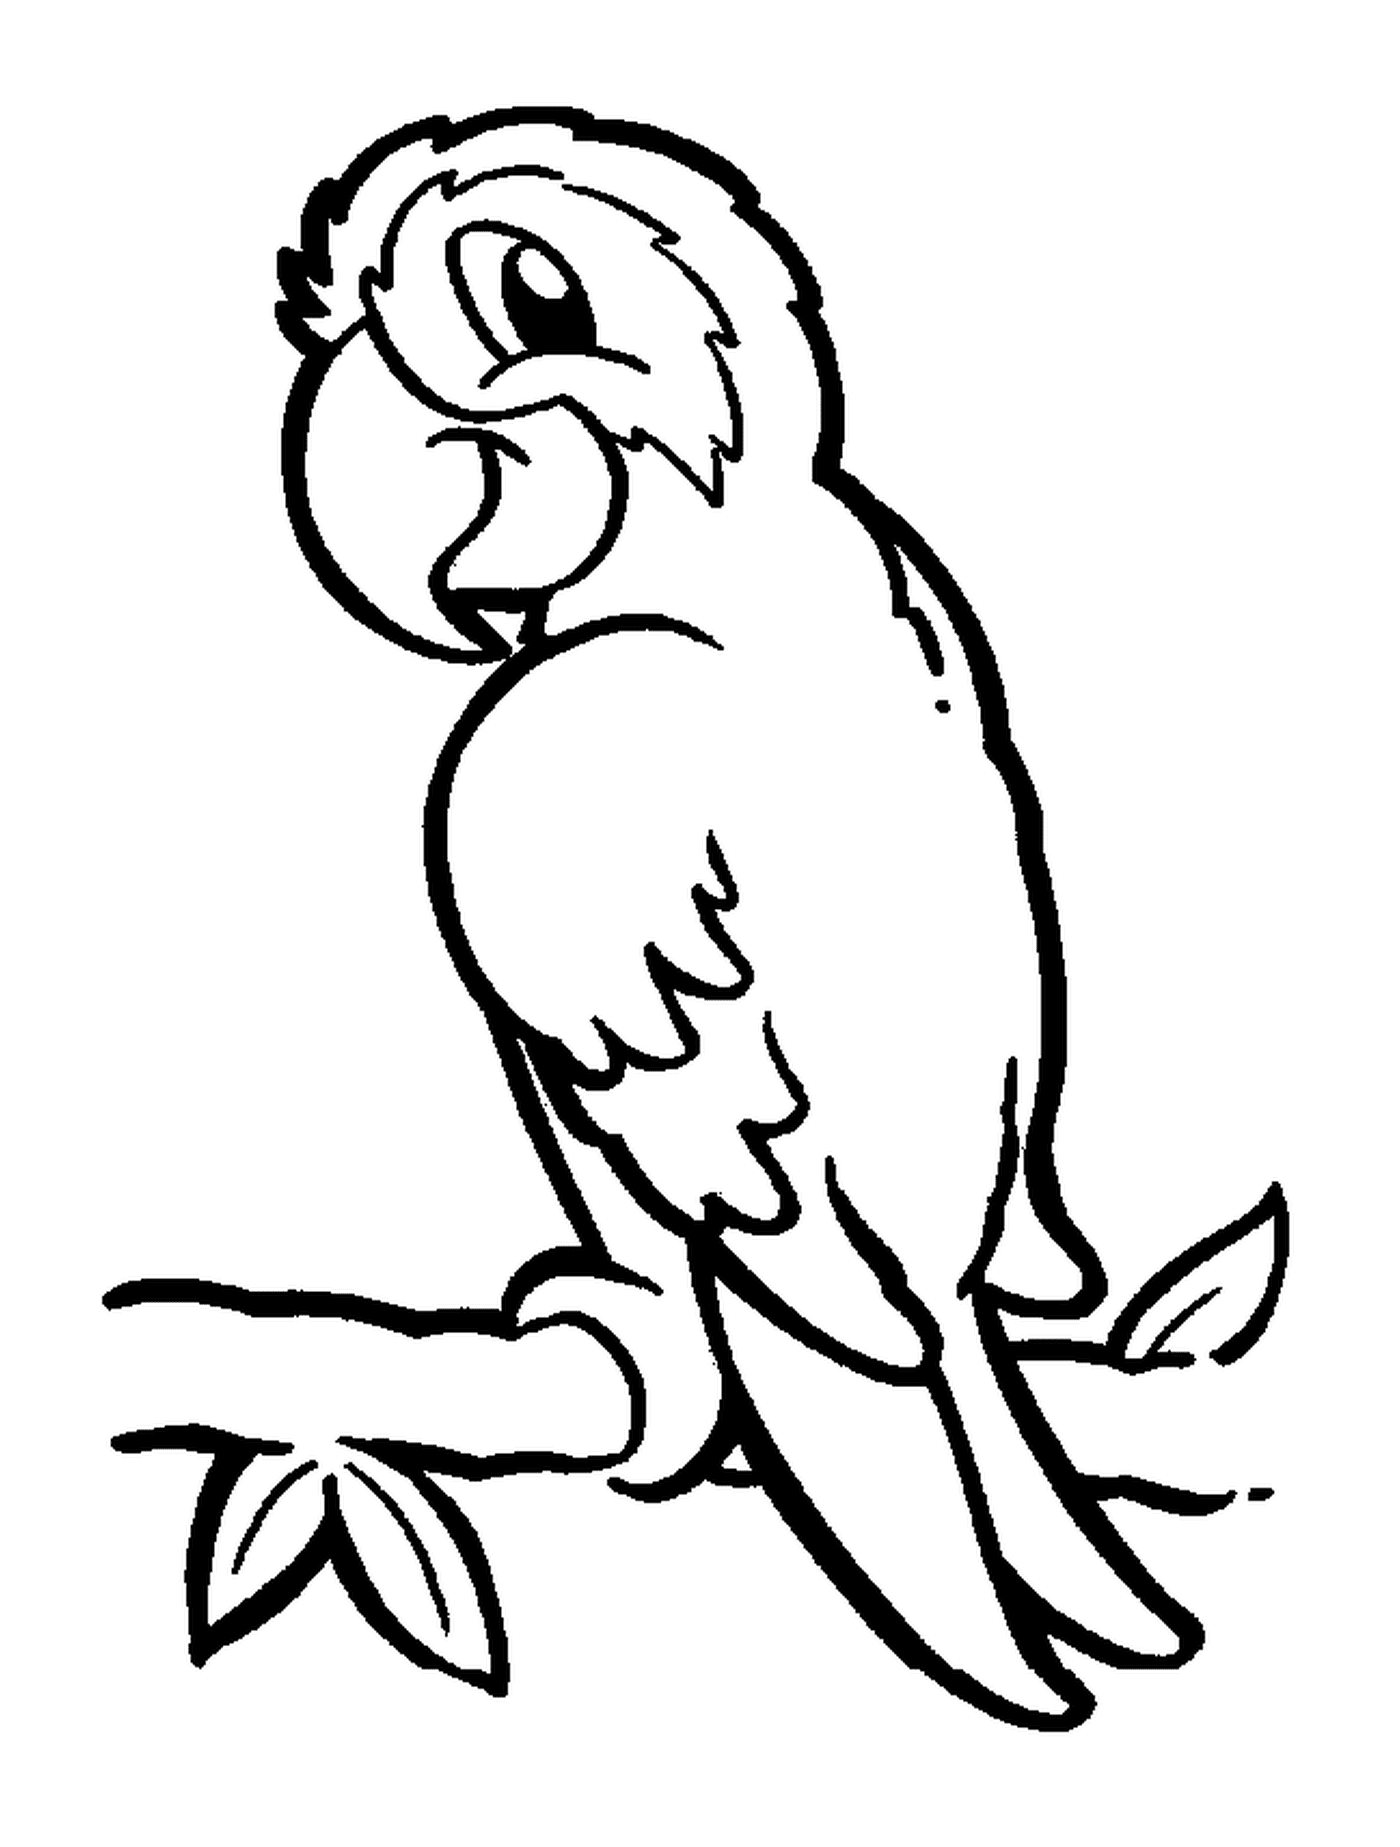  鹦鹉,有彩色羽羽羽的异国鸟类 